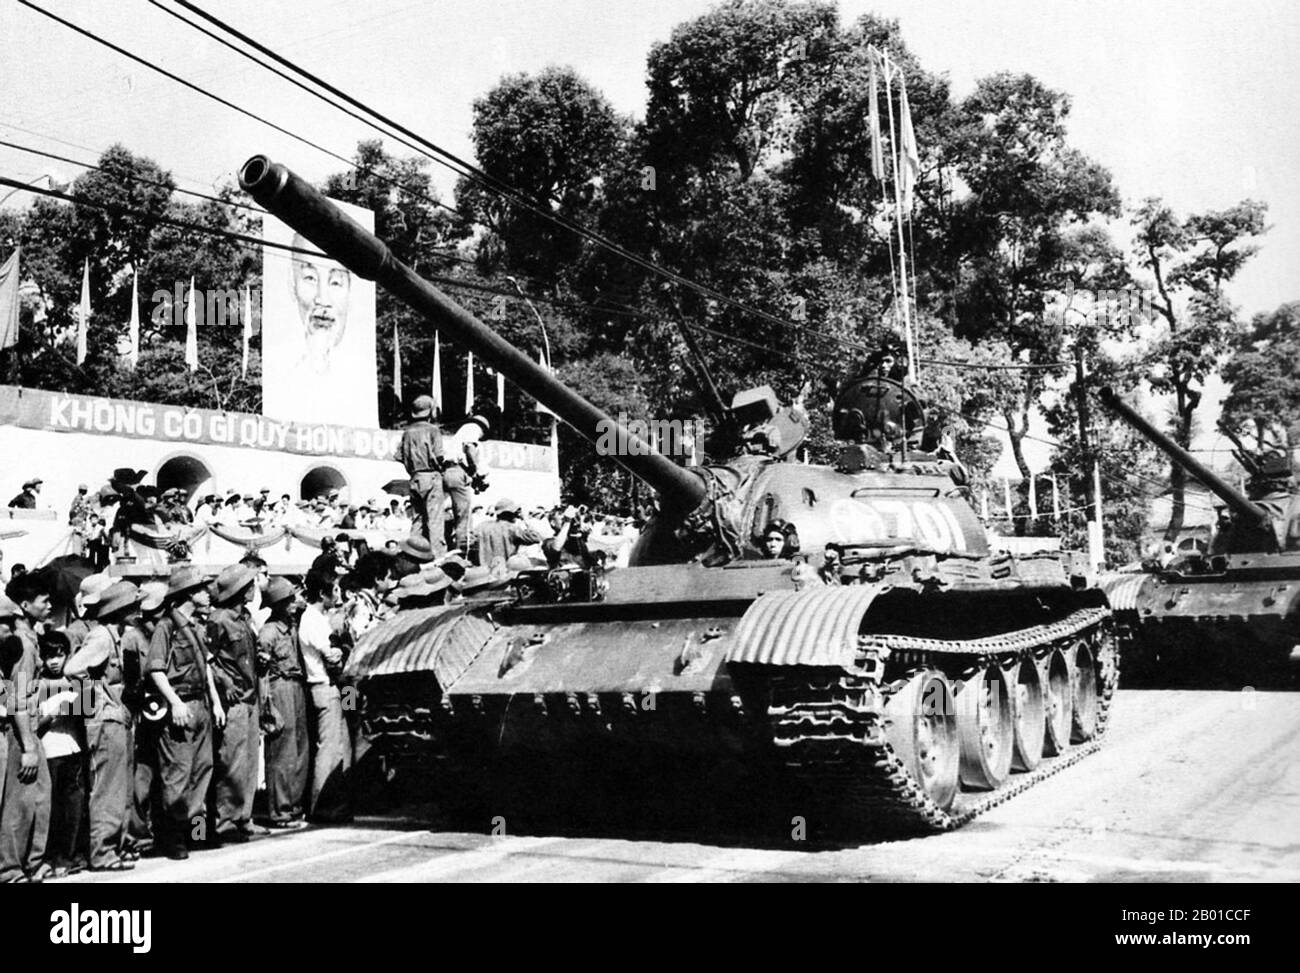 Vietnam: Nordvietnamesische T54 Panzer bei einer Siegesparade durch die Straßen von Saigon, April 1975. Der Fall von Saigon war die Eroberung/Befreiung von Saigon, der Hauptstadt von Südvietnam, durch die Volksarmee von Vietnam und die Nationale Befreiungsfront am 30. April 1975. Die Veranstaltung markierte das Ende des Vietnamkrieges und den Beginn einer Übergangsphase, die zur formalen Wiedervereinigung Vietnams unter kommunistischer Herrschaft führte. Nordvietnamesische Truppen unter dem Kommando des Oberen Generals Văn Tiến Dũng begannen ihren letzten Angriff auf Saigon, der am 29. April von General Nguyen Van Toan kommandiert wurde. Stockfoto